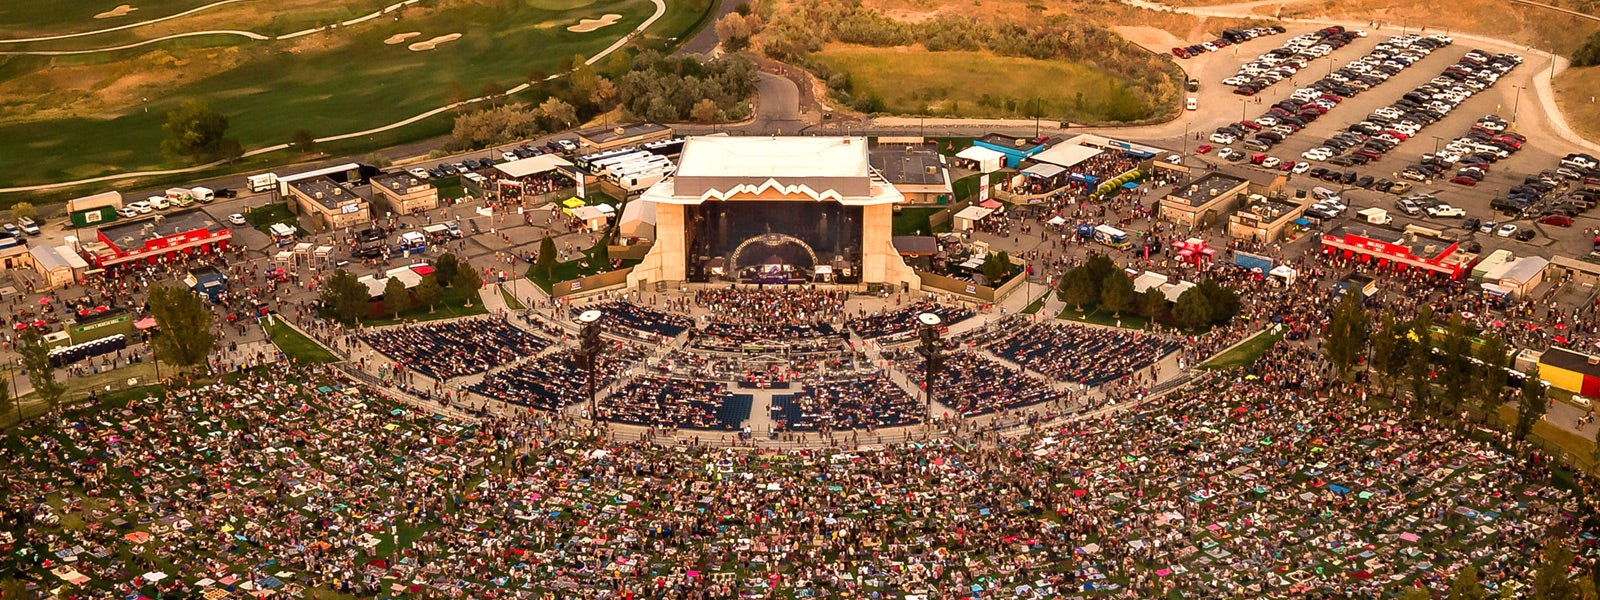 USANA Amphitheatre - 2020 show schedule & venue information - Live Nation